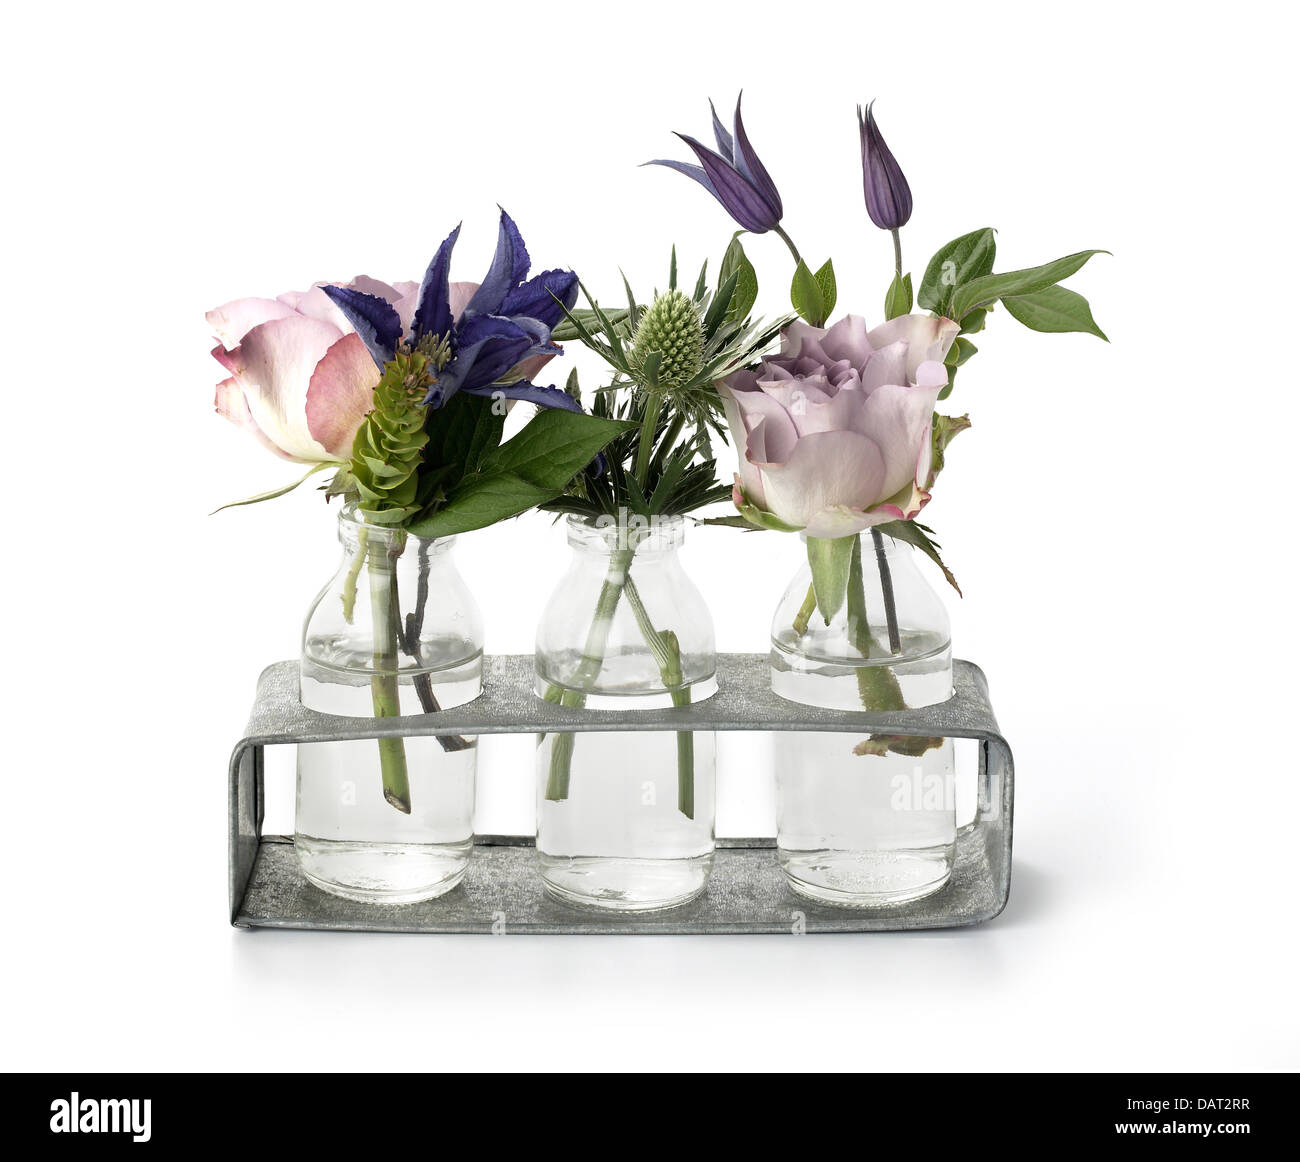 Des fleurs dans des vases tubes à essai Banque D'Images